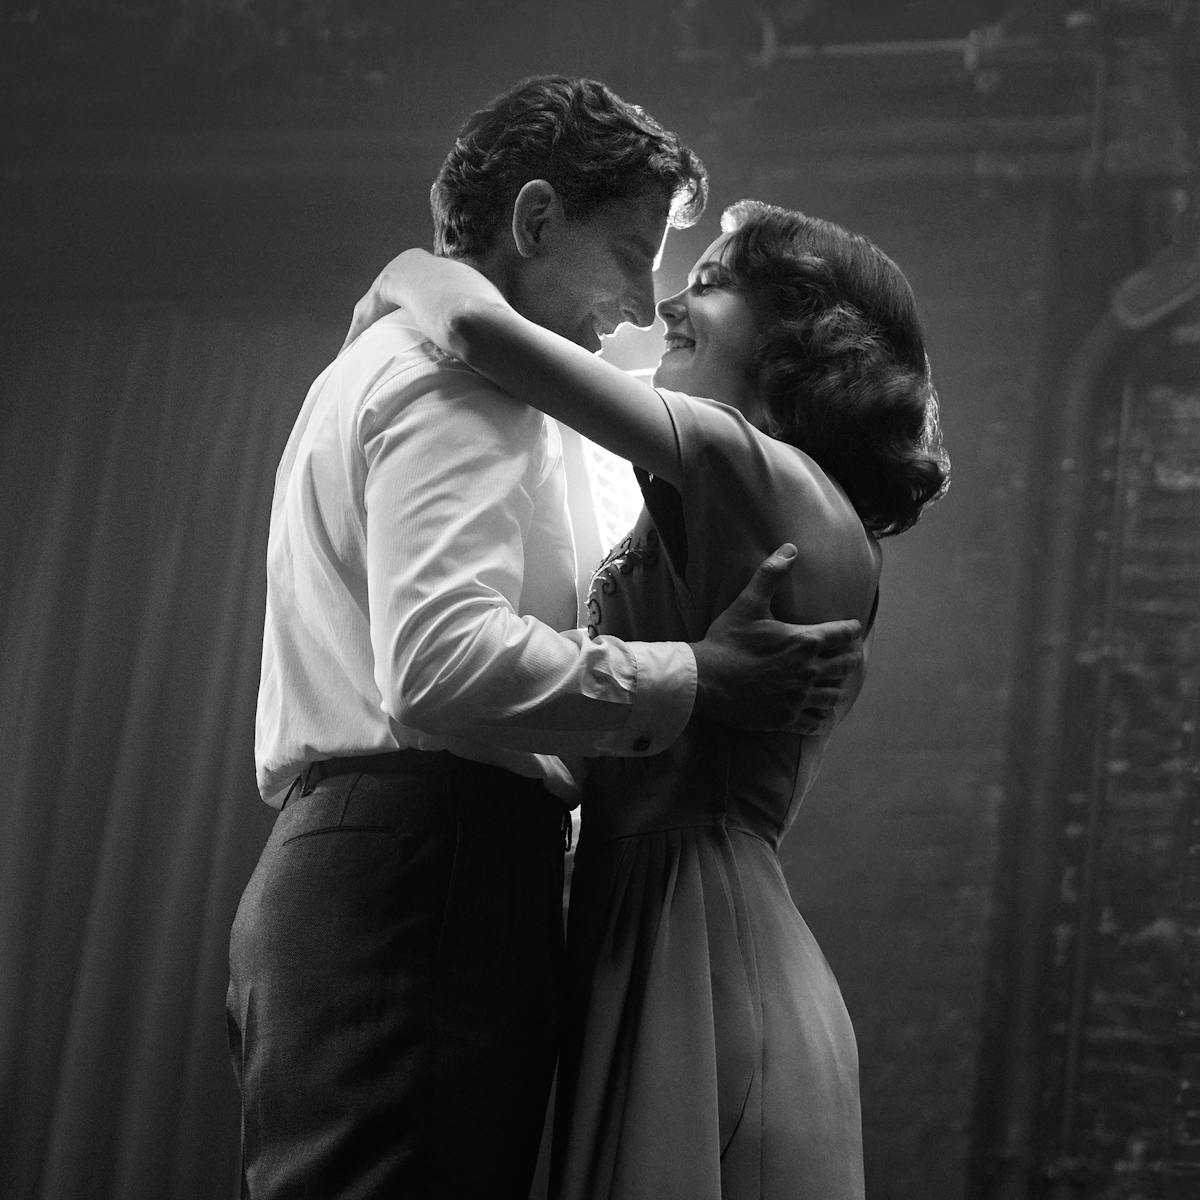 Leonard Bernstein (Bradley Cooper) and Felicia Montealegre Cohn Bernstein (Carey Mulligan) dance on a darkened stage. How romantic.